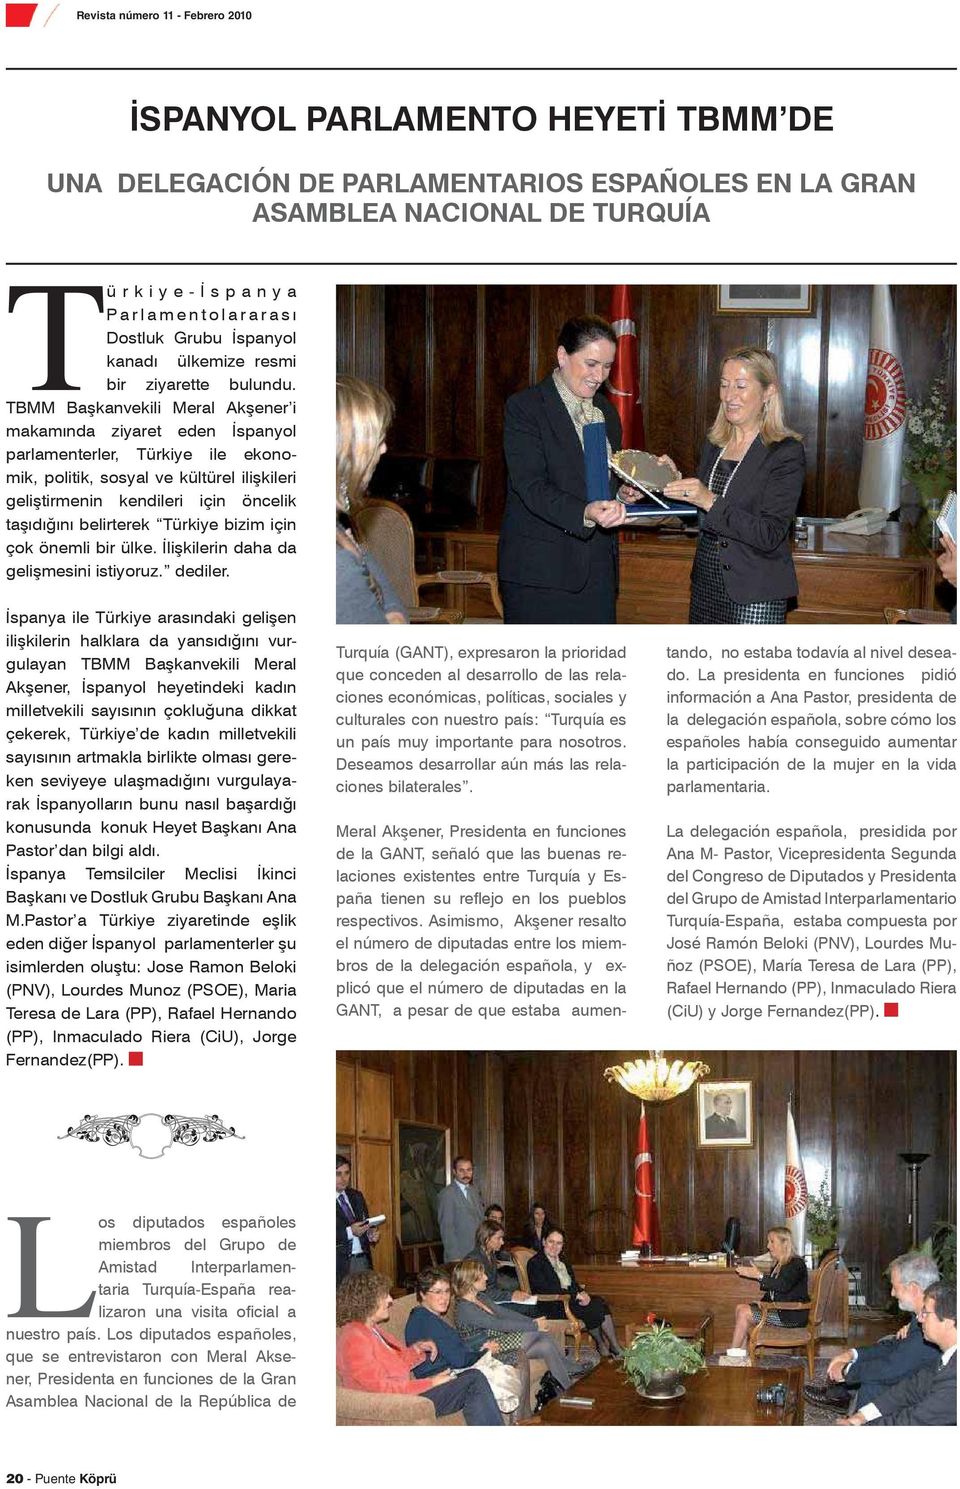 TBMM Başkanvekili Meral Akşener i makamında ziyaret eden İspanyol parlamenterler, Türkiye ile ekonomik, politik, sosyal ve kültürel ilişkileri geliştirmenin kendileri için öncelik taşıdığını